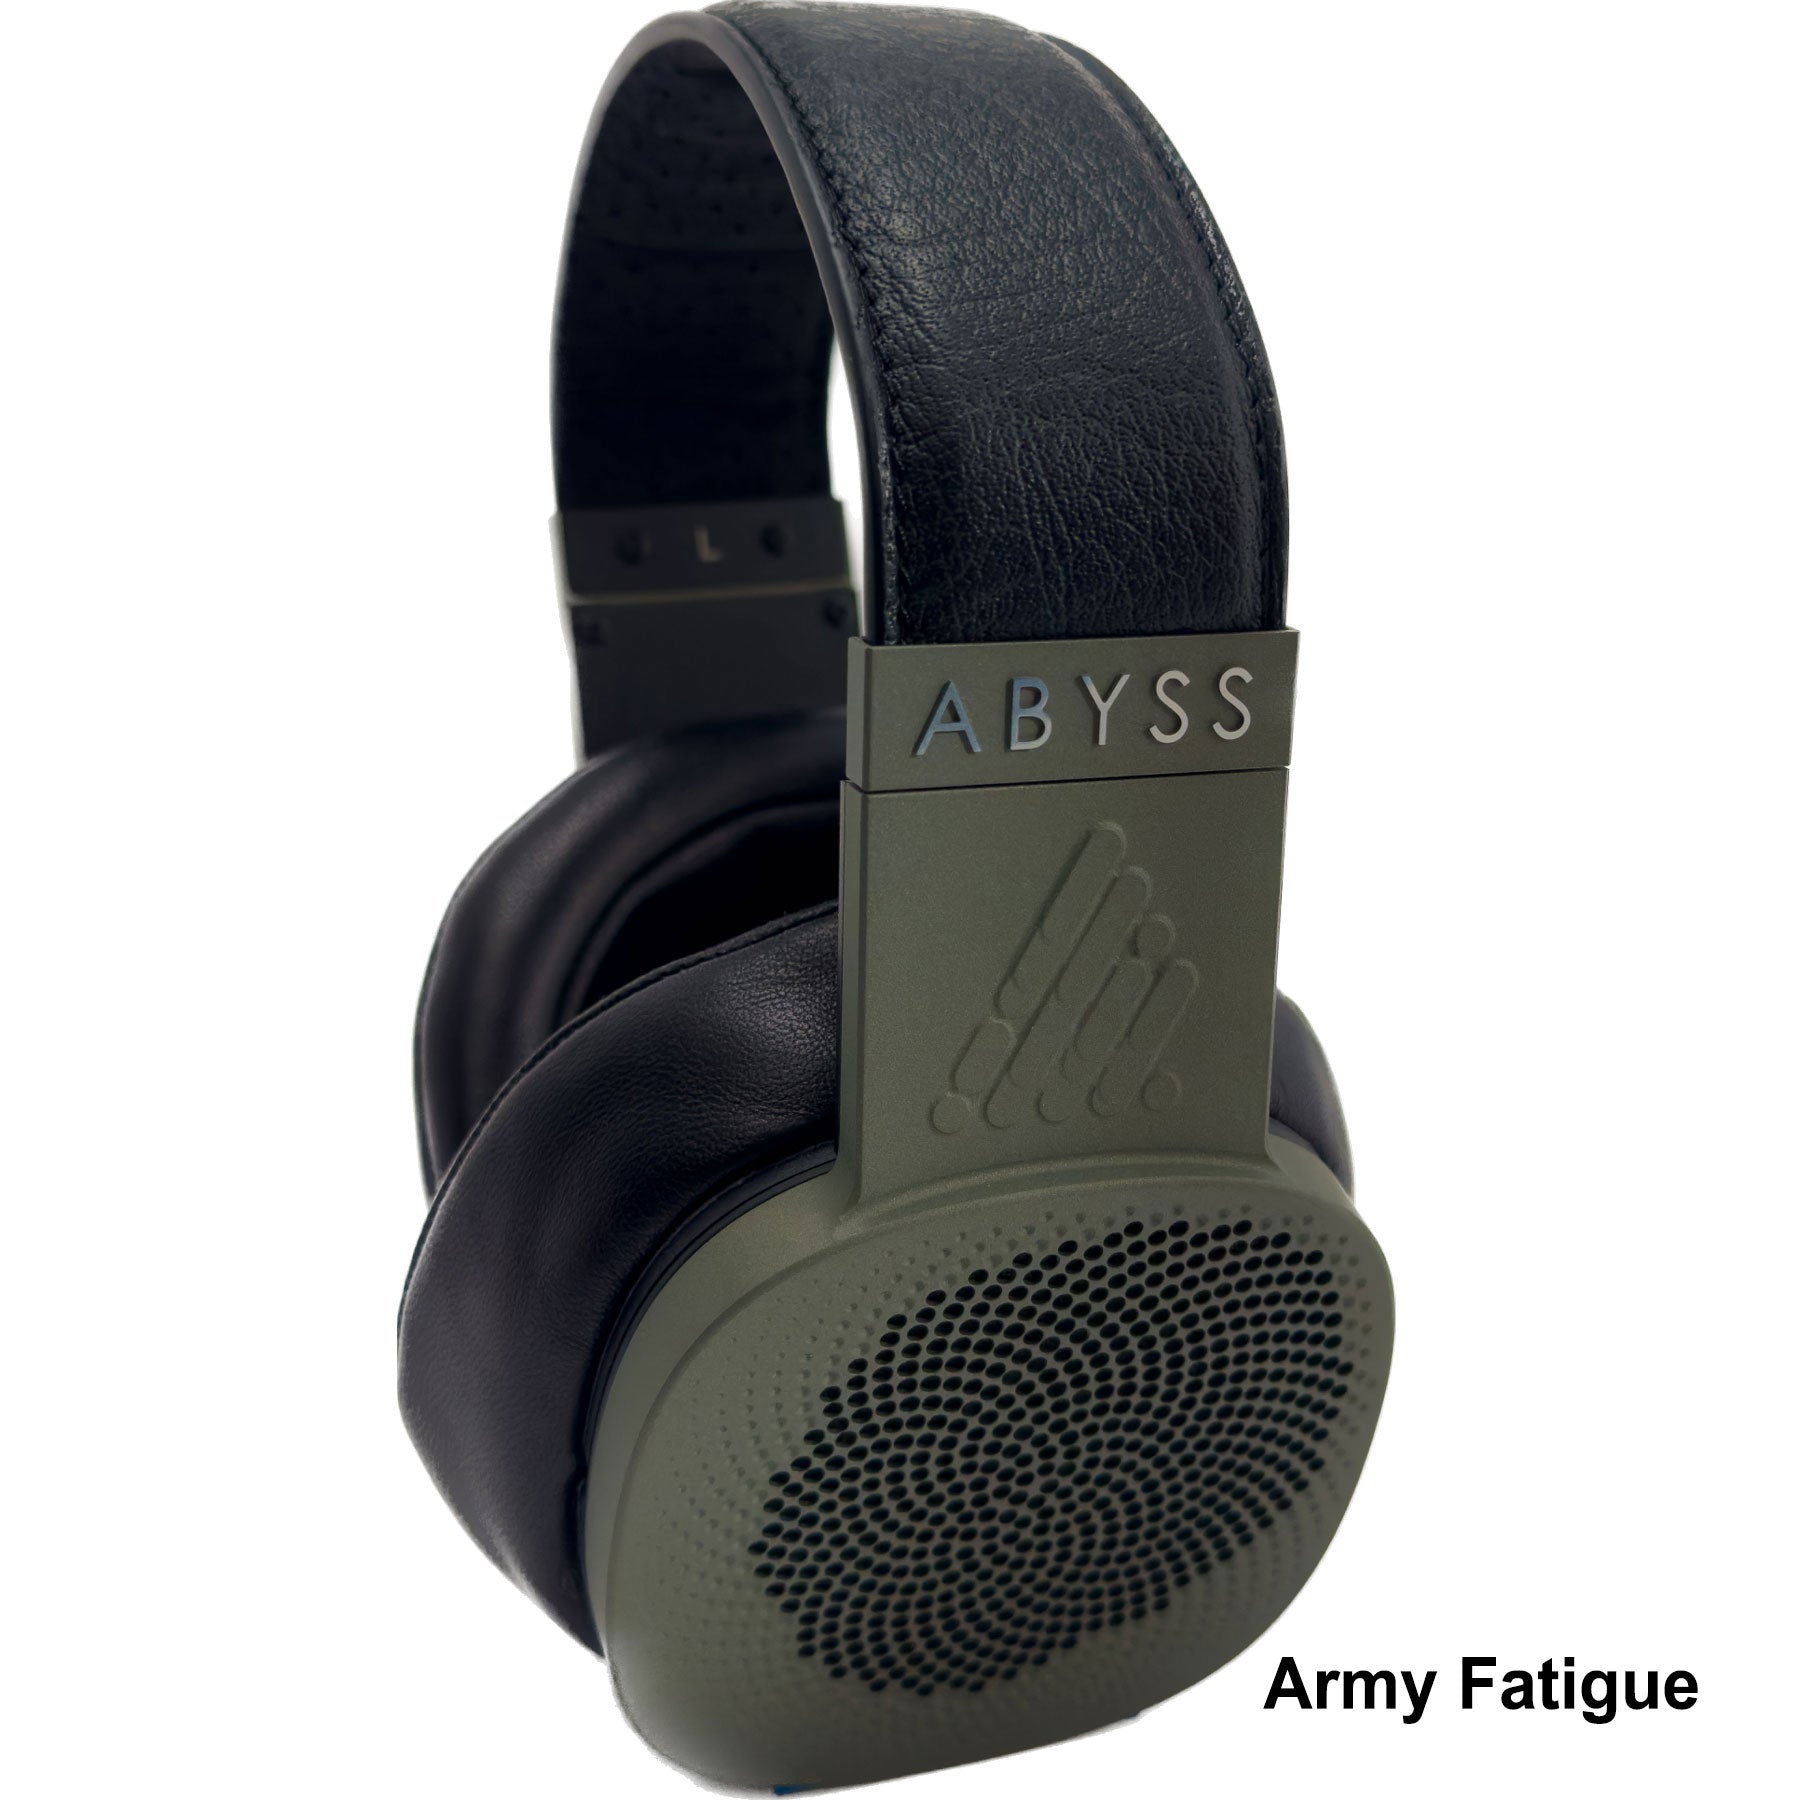 ABYSS DIANA TC Limitowana edycja audiofilskich słuchawek premium w niestandardowych kolorach